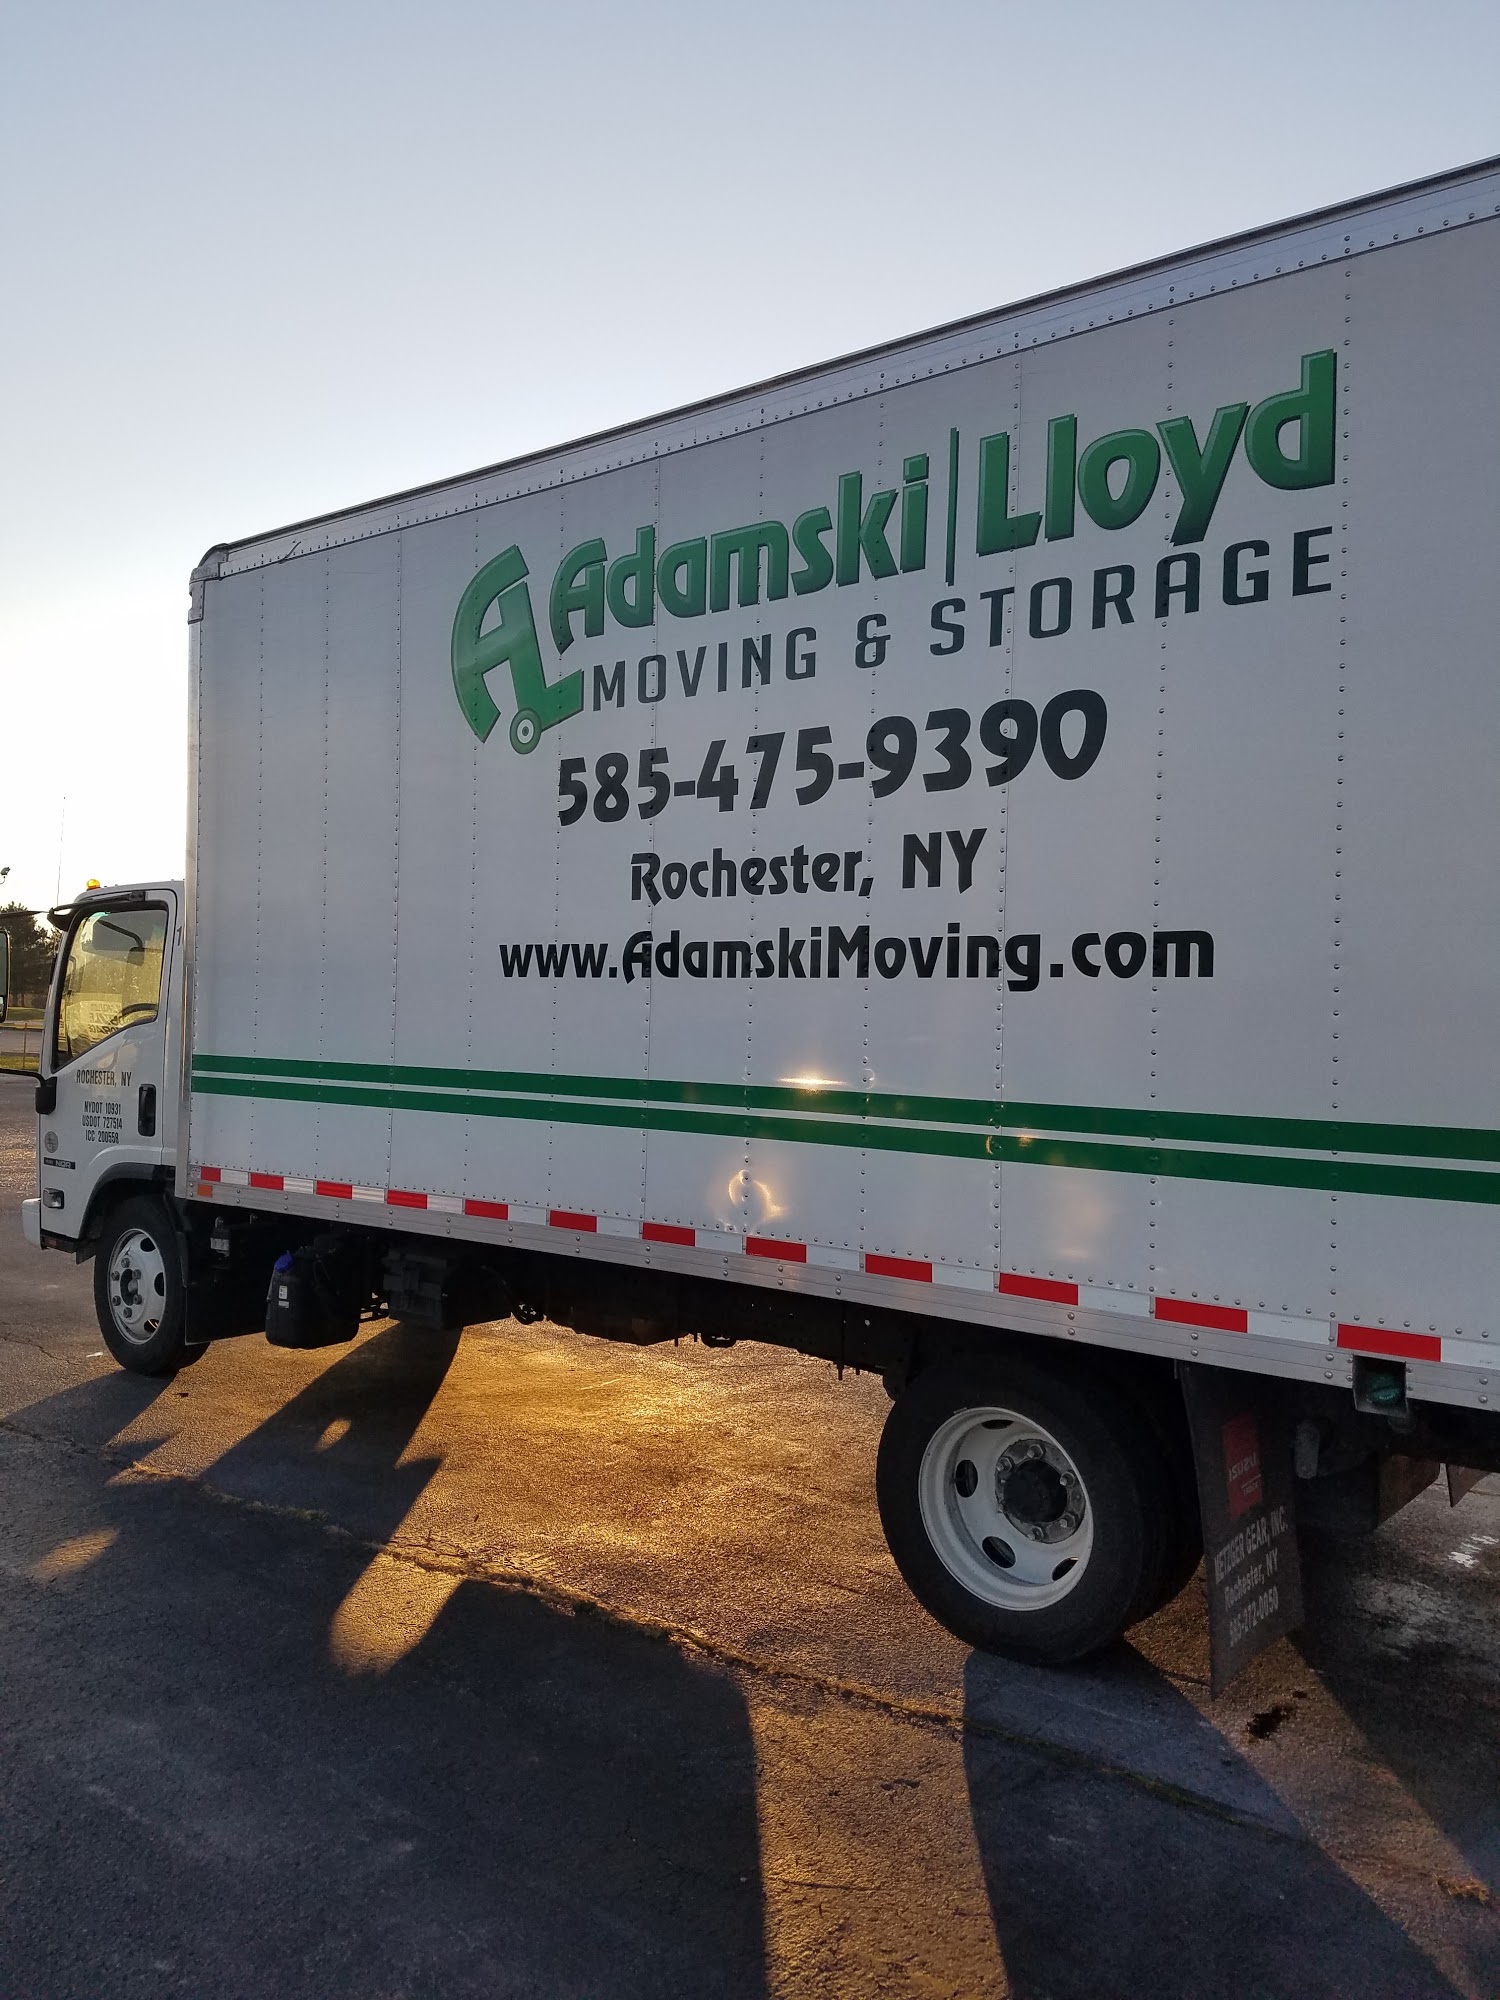 Adamski/Lloyd Moving & Storage Inc